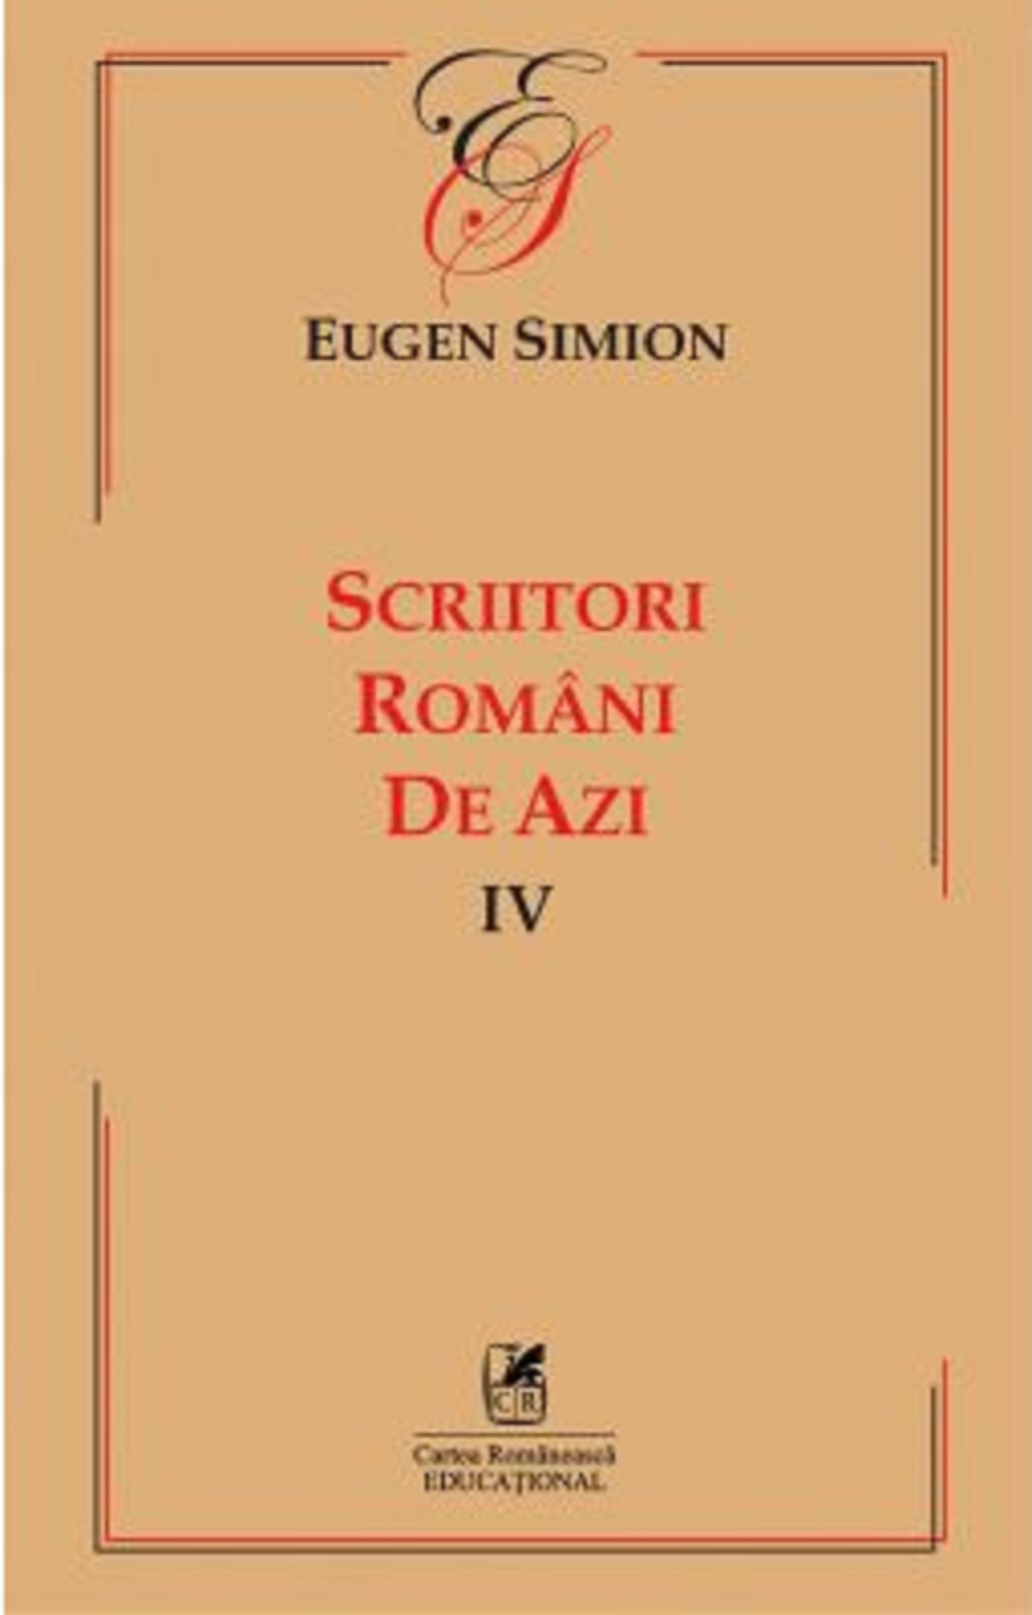 Scriitorii romani de azi IV | Eugen Simion Cartea Romaneasca poza noua